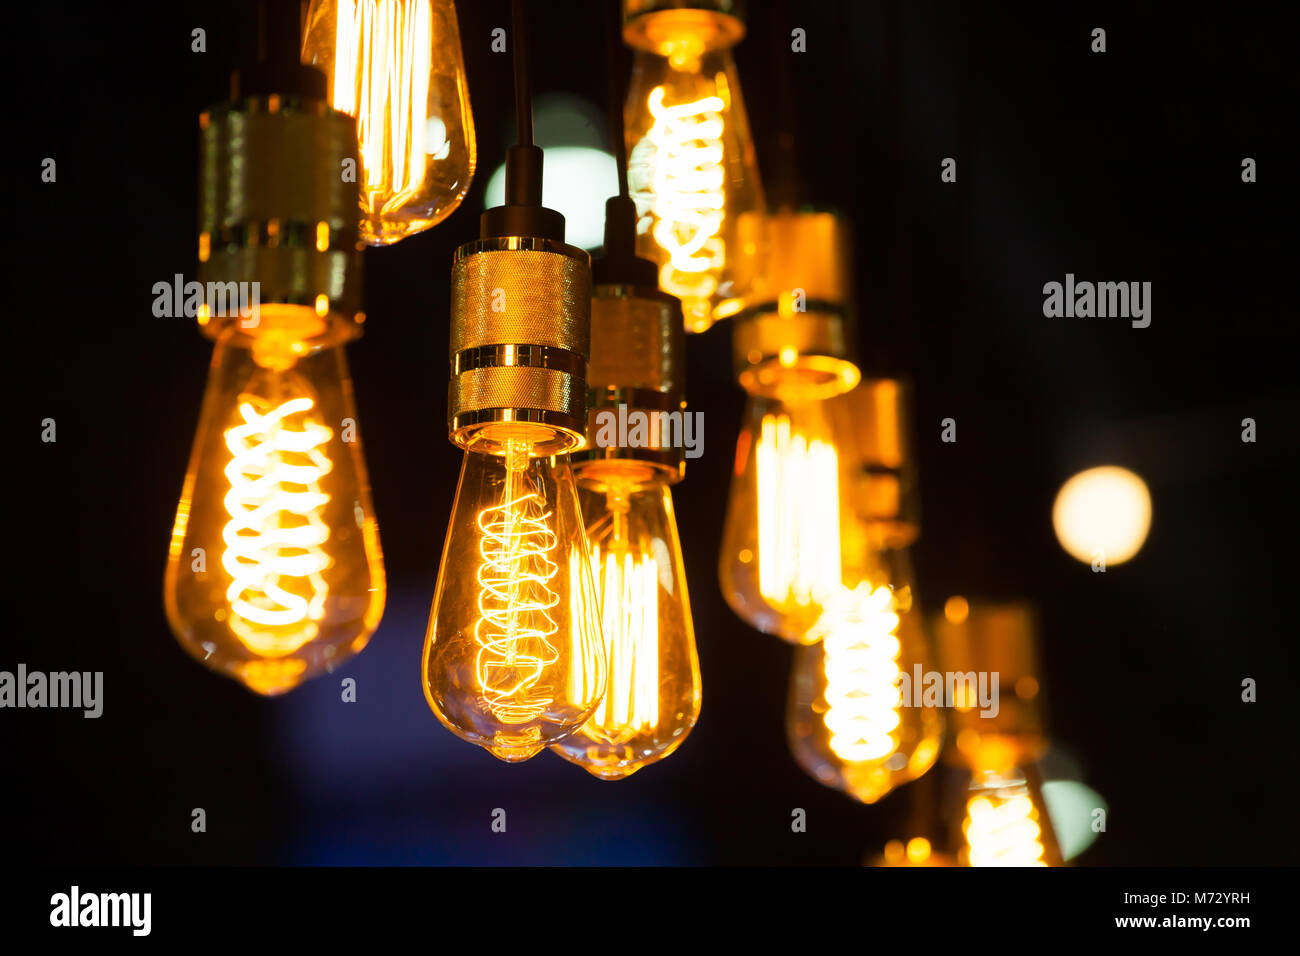 Lámparas vintage a la decoración interior. Foto de stock